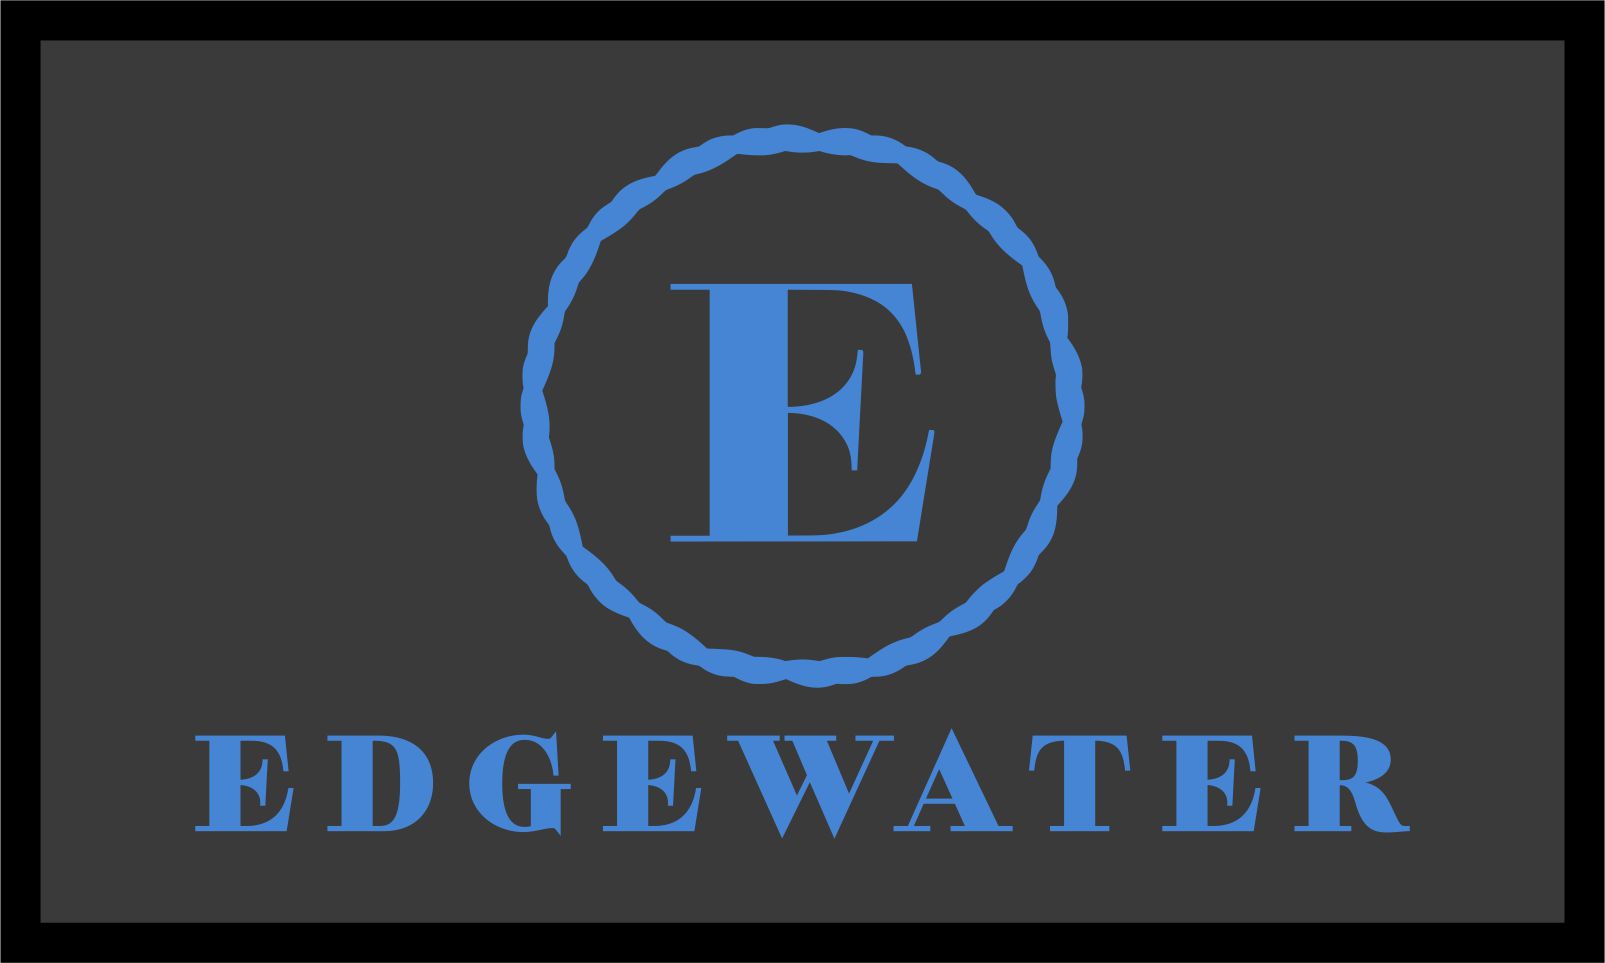 Edgewater - back door 3 X 5 Luxury Berber Inlay - The Personalized Doormats Company